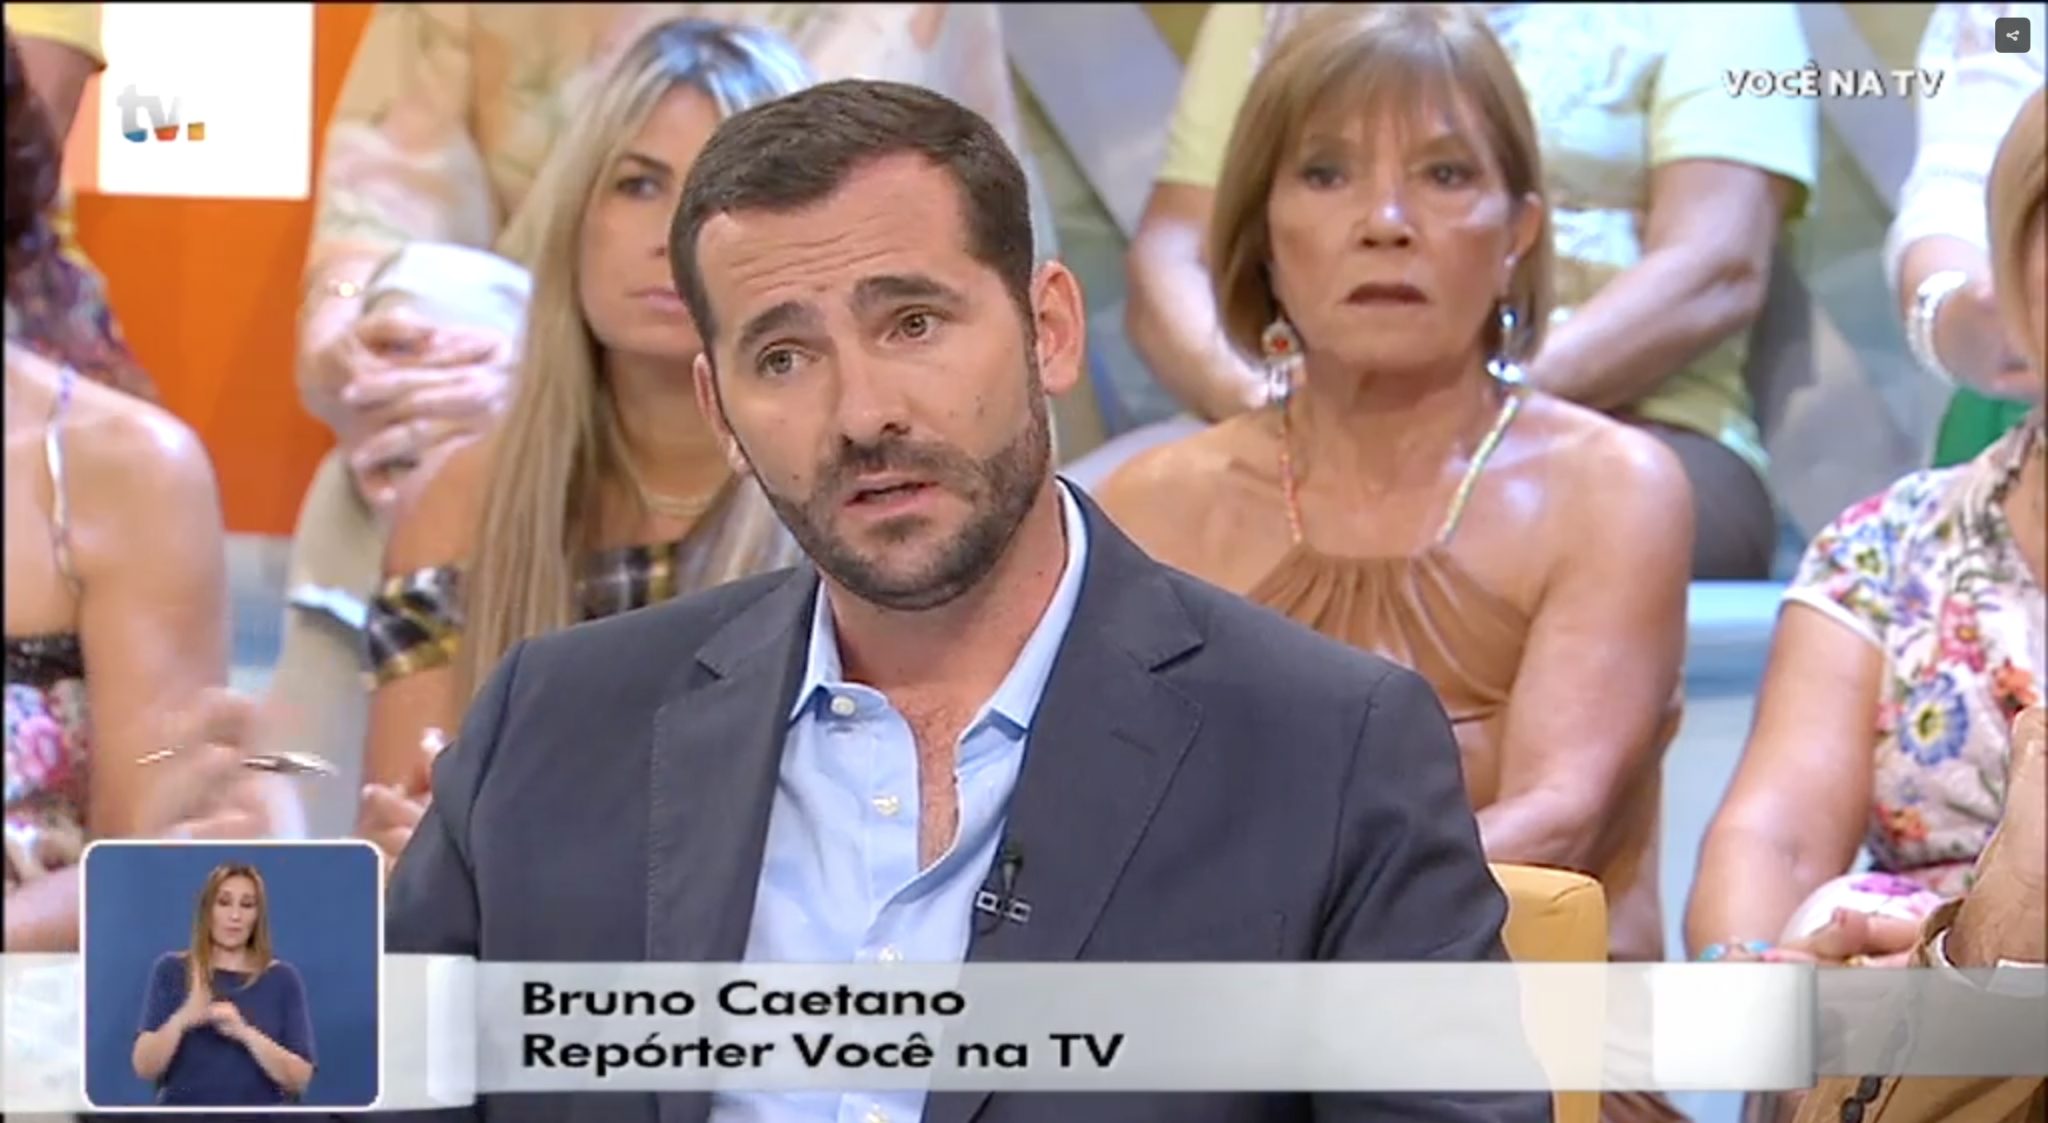 bruno caetano reporter voce na tv Afastado do 'Você na TV, Bruno Caetano confessa estar "desiludido com muitas pessoas"